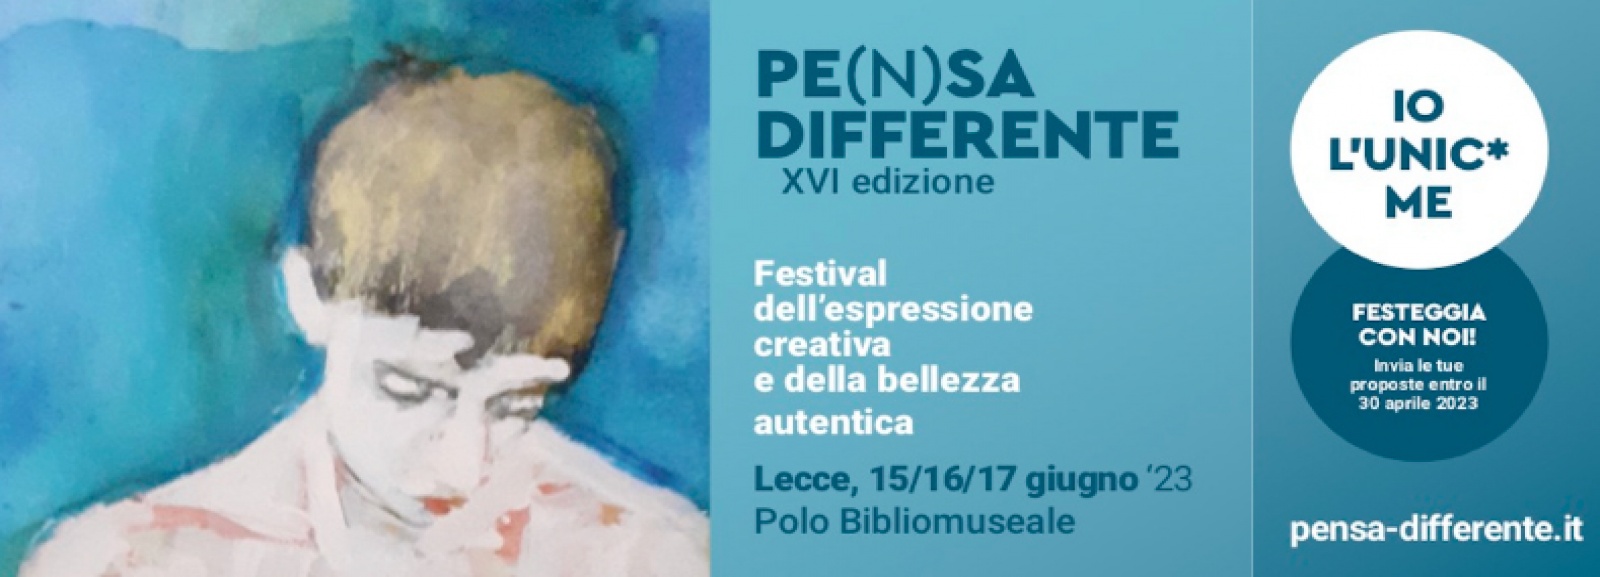 PE(N)SA DIFFERENTE 2023 > Festival